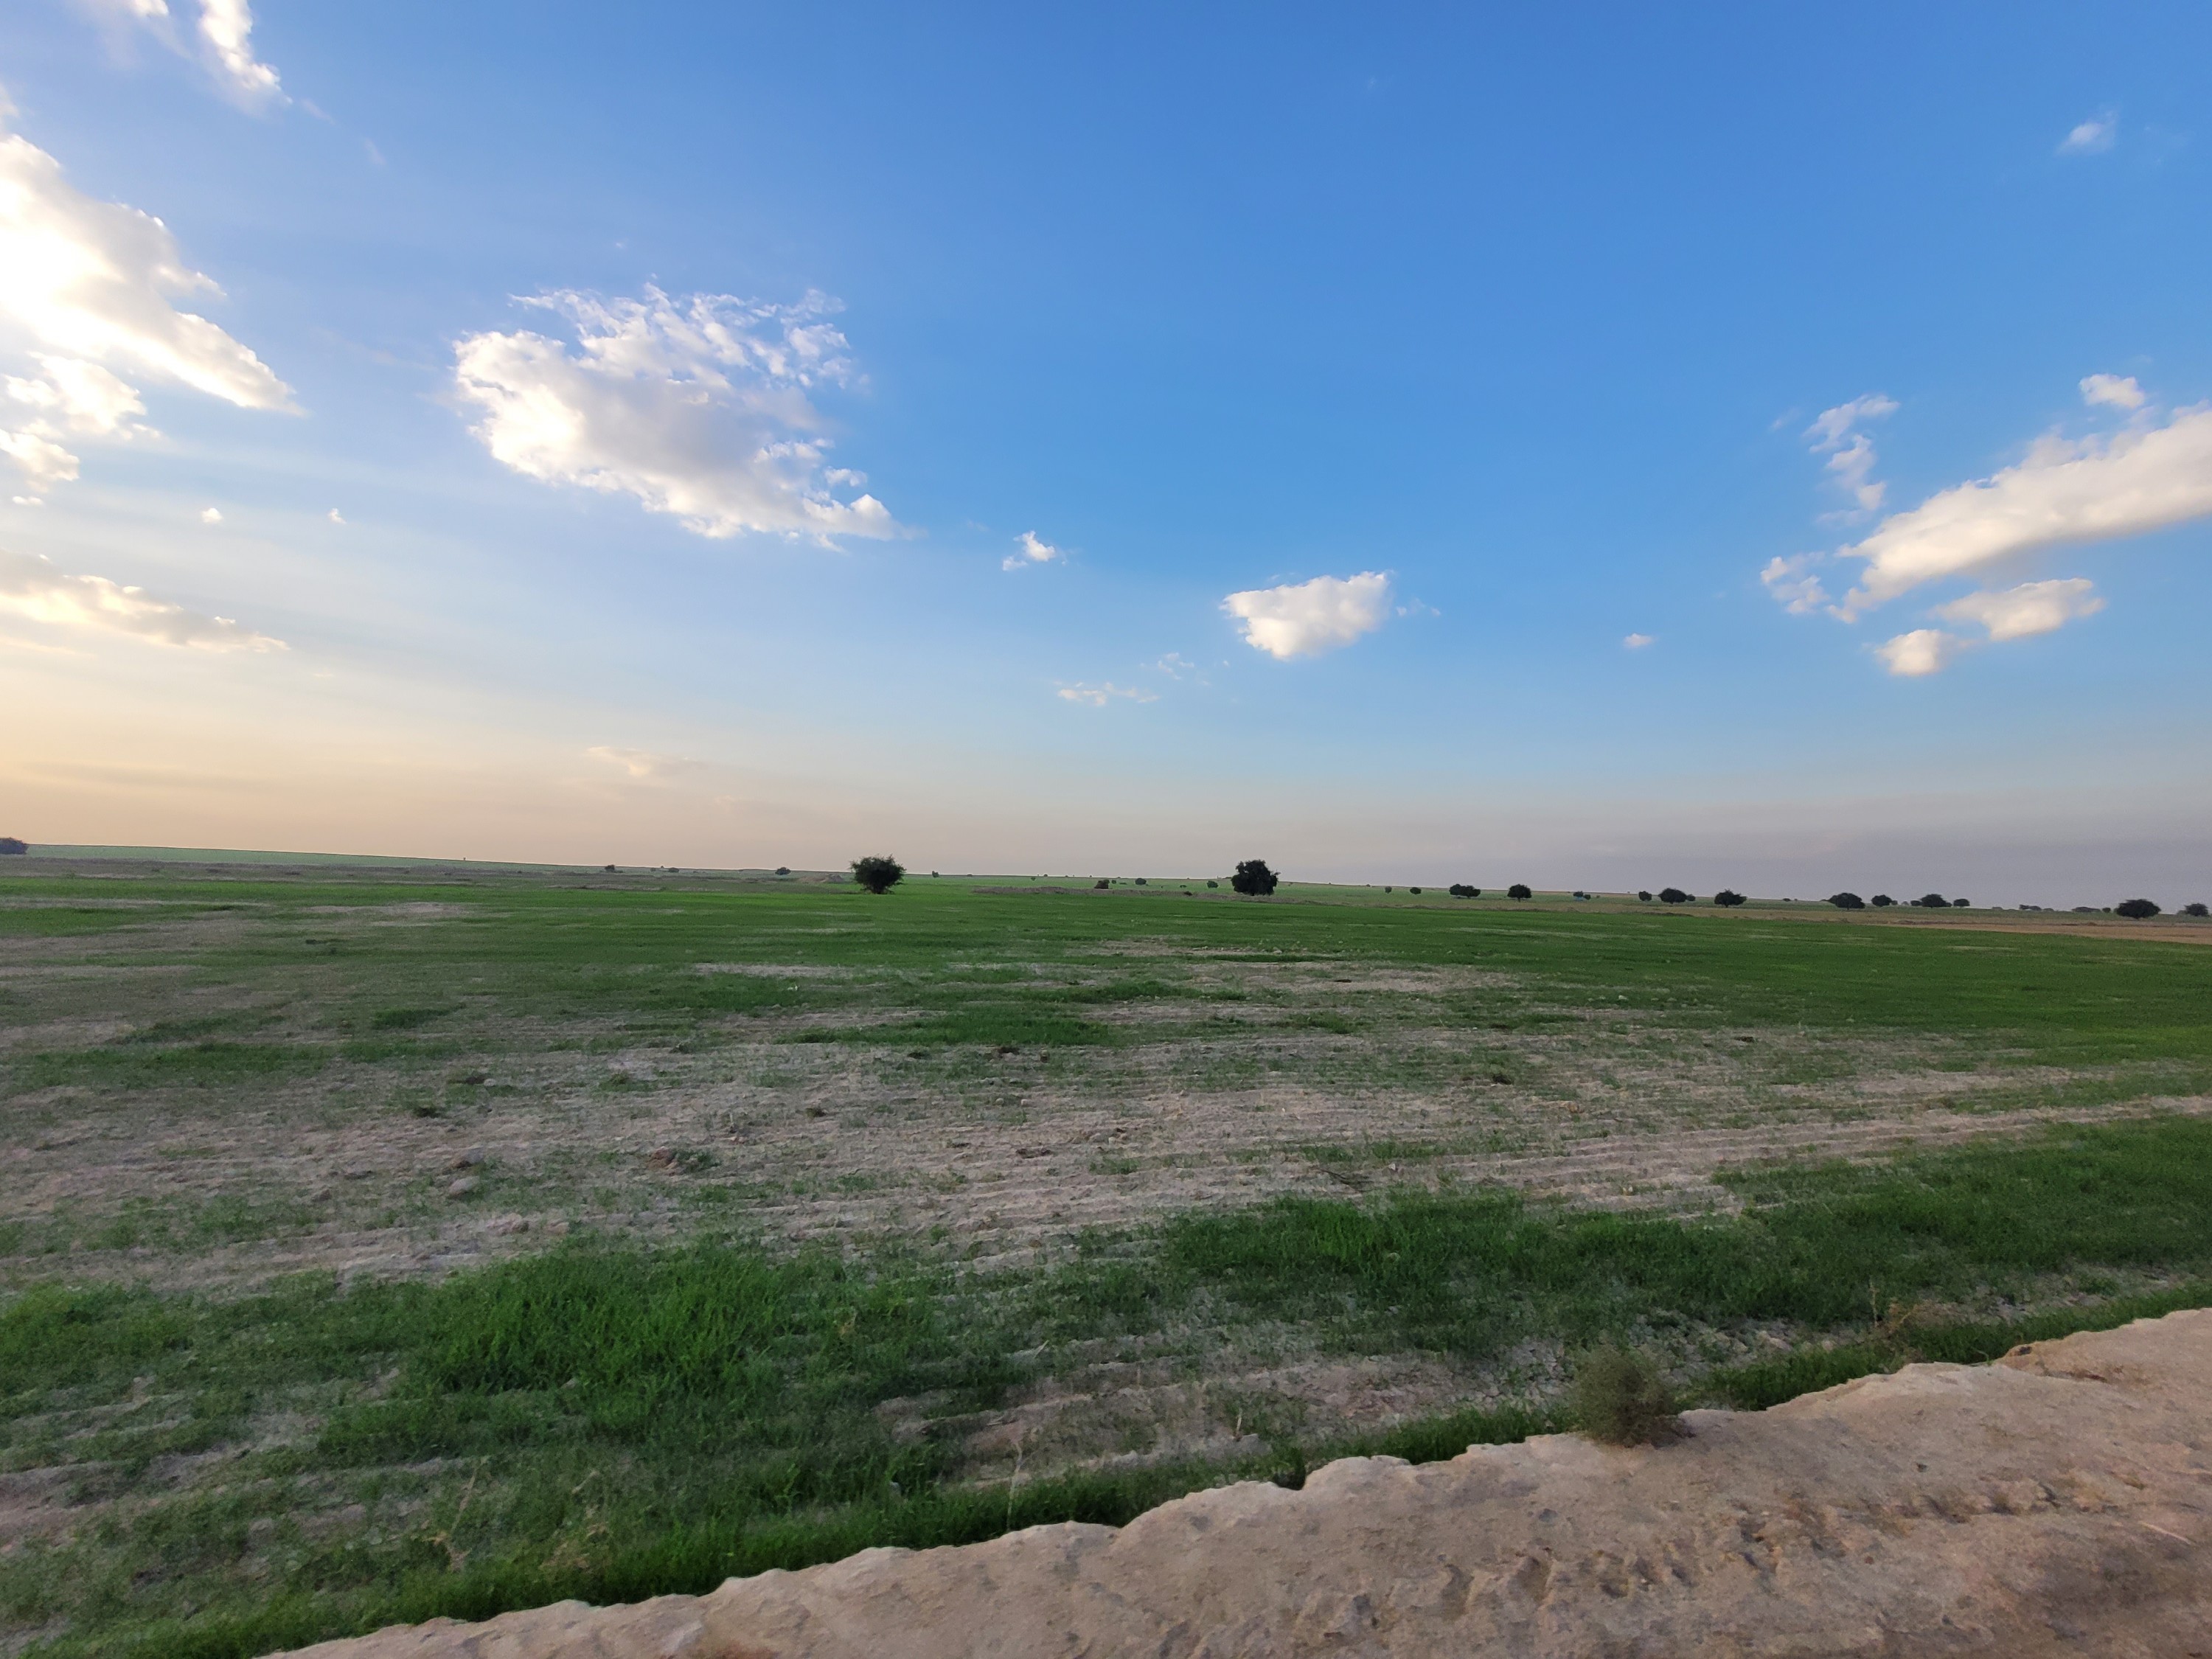 تصاویری زیبا و بکر از منطقه مزرعه شهرستان کرخه خوزستان